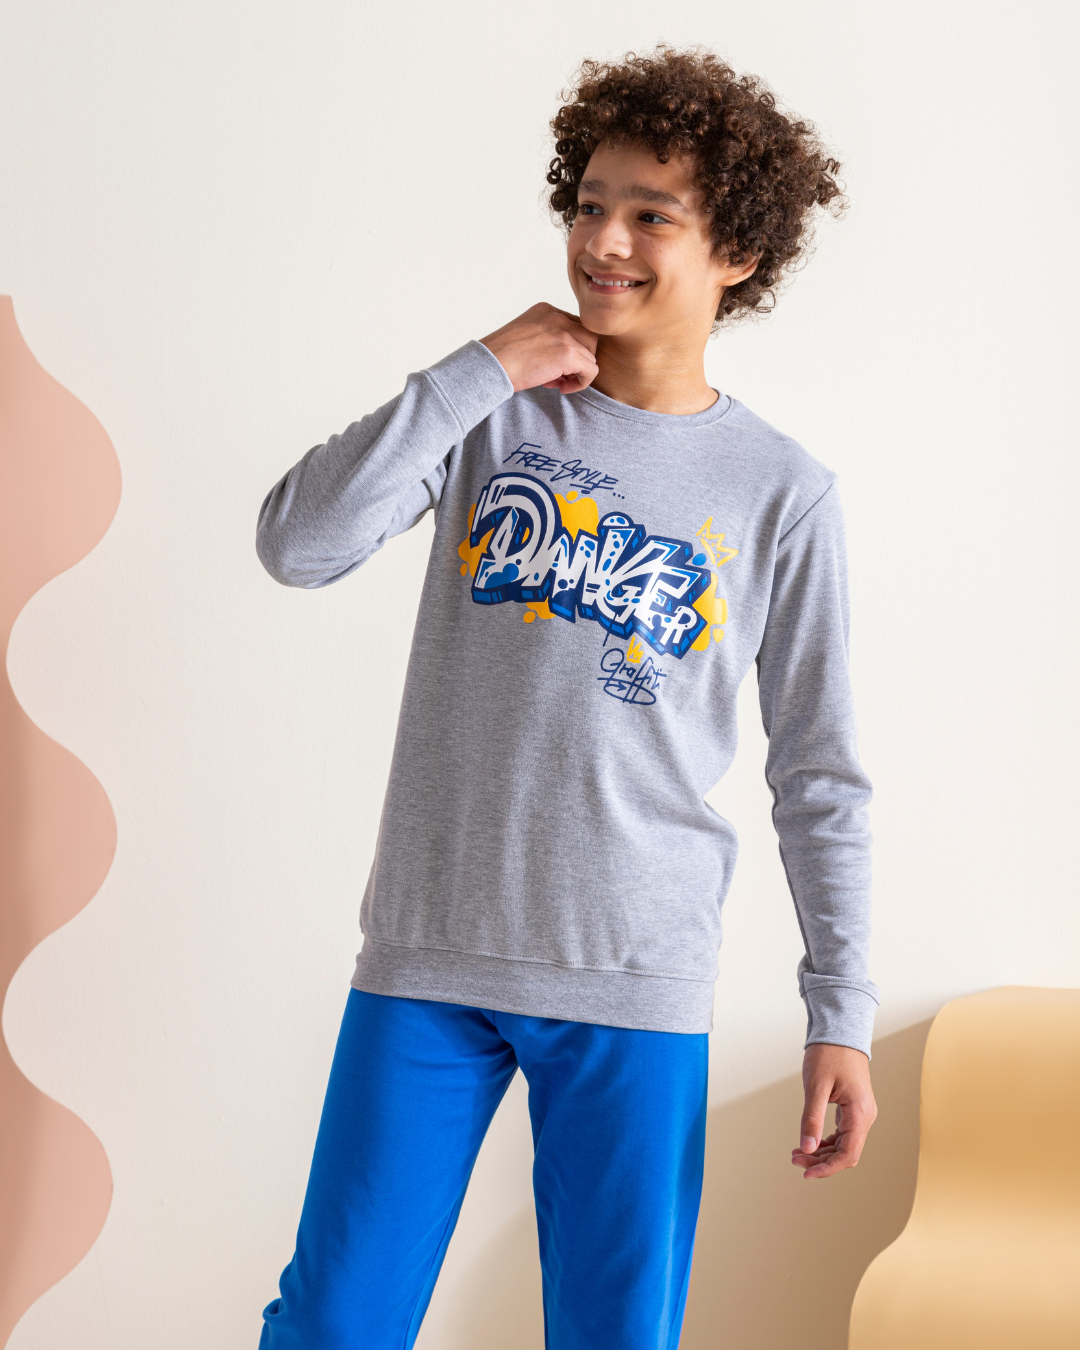 Danger boys pajamas with interlock print